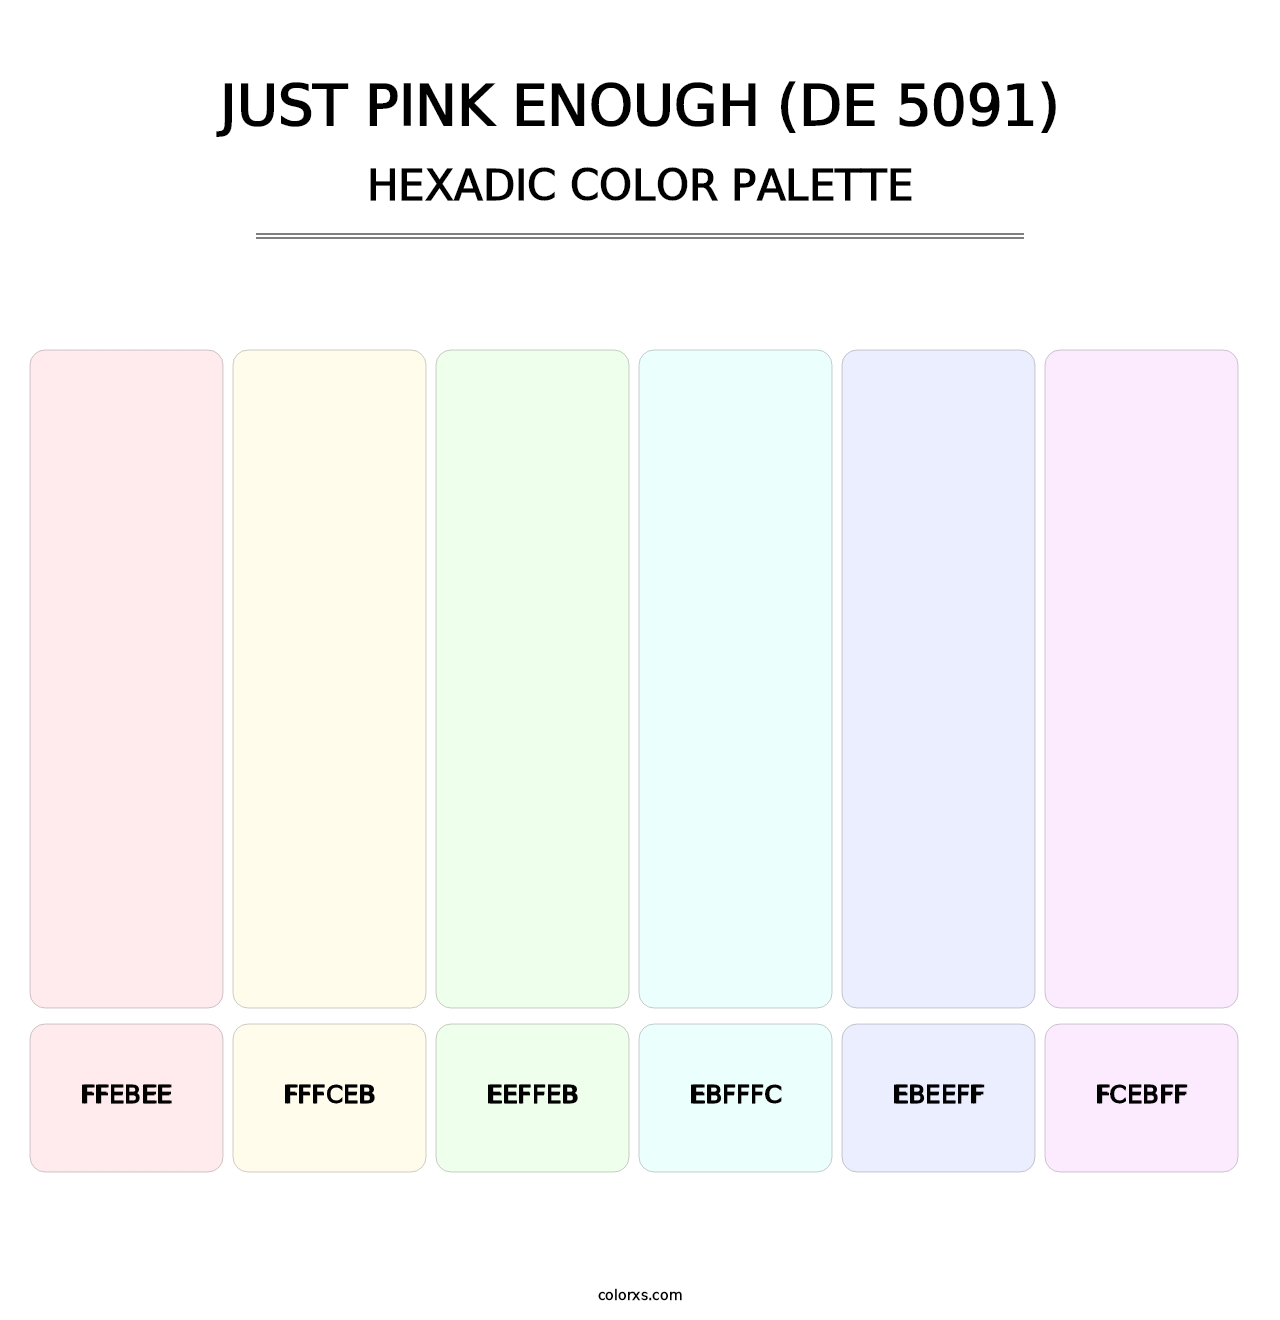 Just Pink Enough (DE 5091) - Hexadic Color Palette